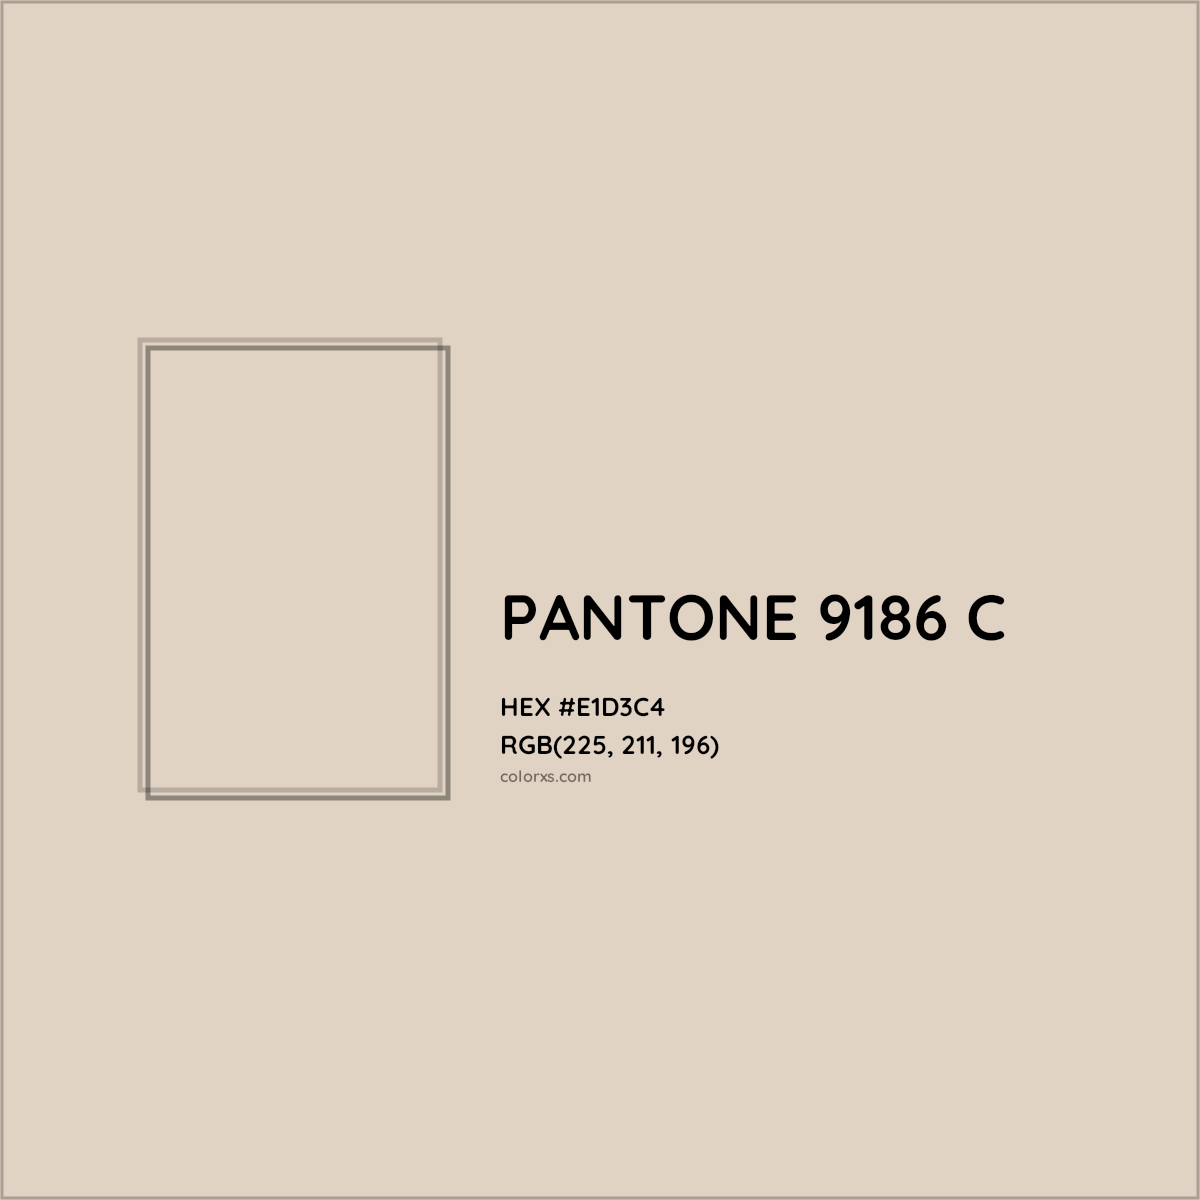 HEX #E1D3C4 PANTONE 9186 C CMS Pantone PMS - Color Code